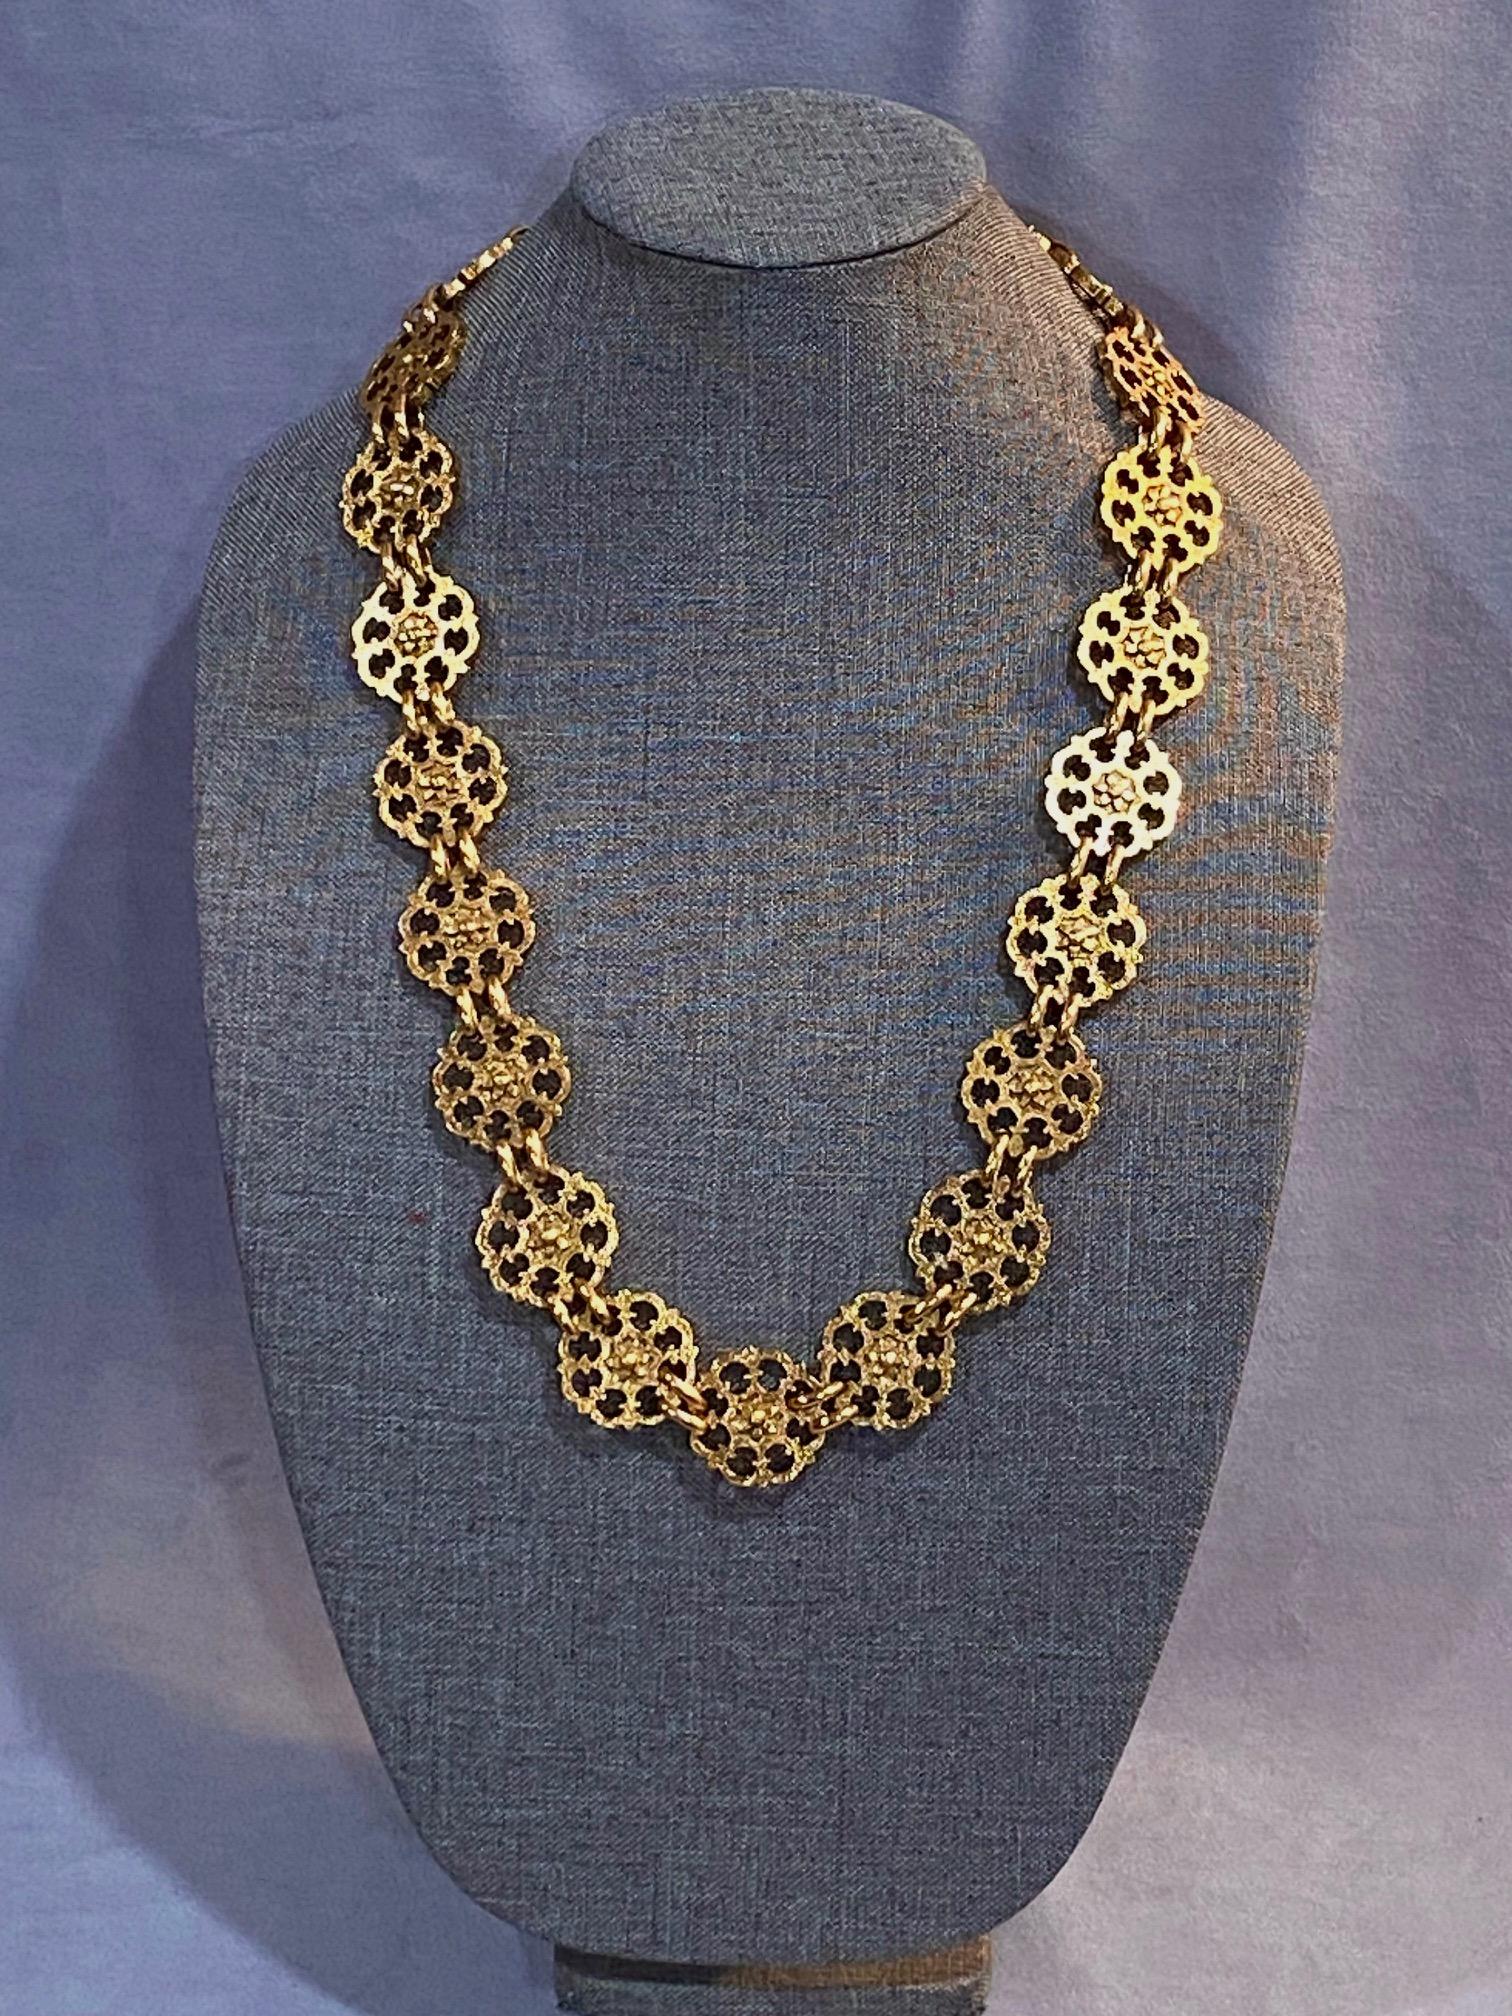 Très belle ceinture dorée Yves Saint Laurent des années 1980, en excellent état. La ceinture est munie d'un petit fermoir à crochet et peut facilement être portée comme un collier, comme indiqué sur une forme de collier dans les photos. Il y a 23